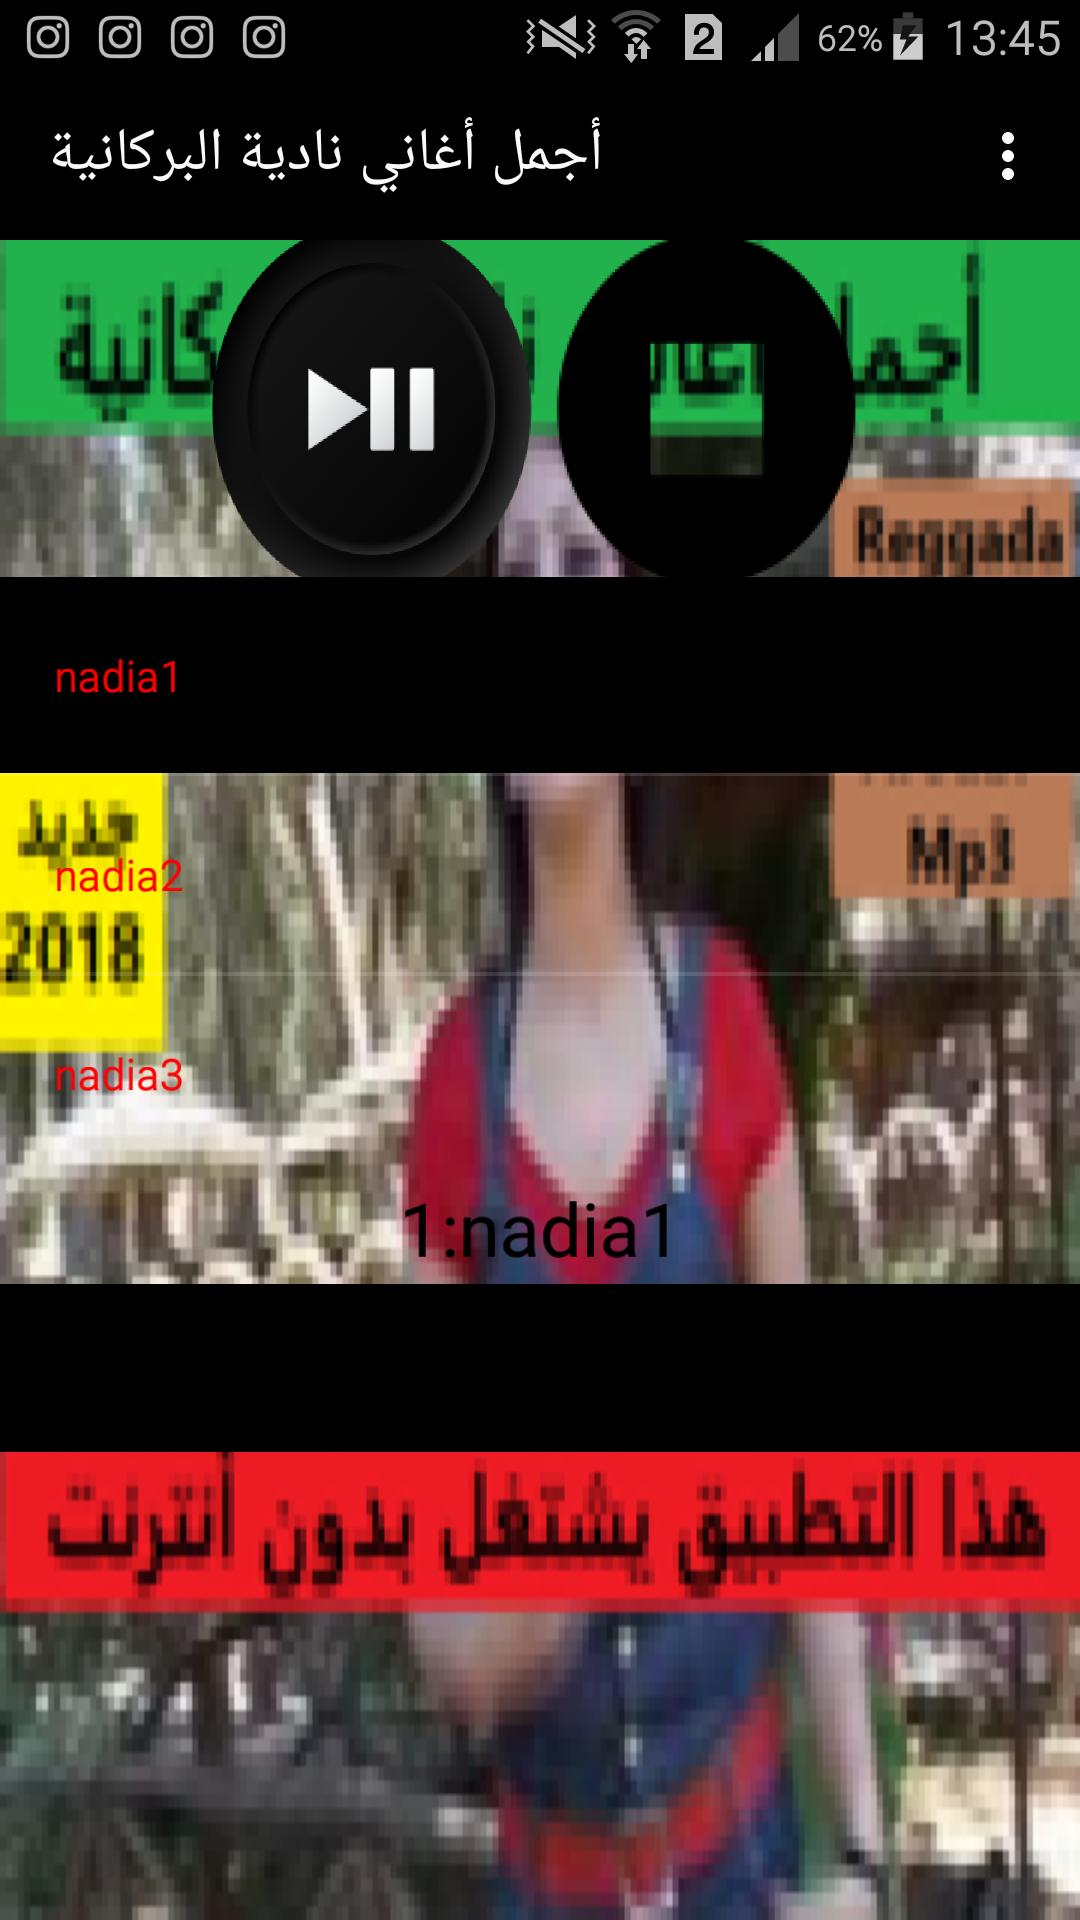 أجمل أغاني نادية البركانية nadia el berkania APK for Android Download